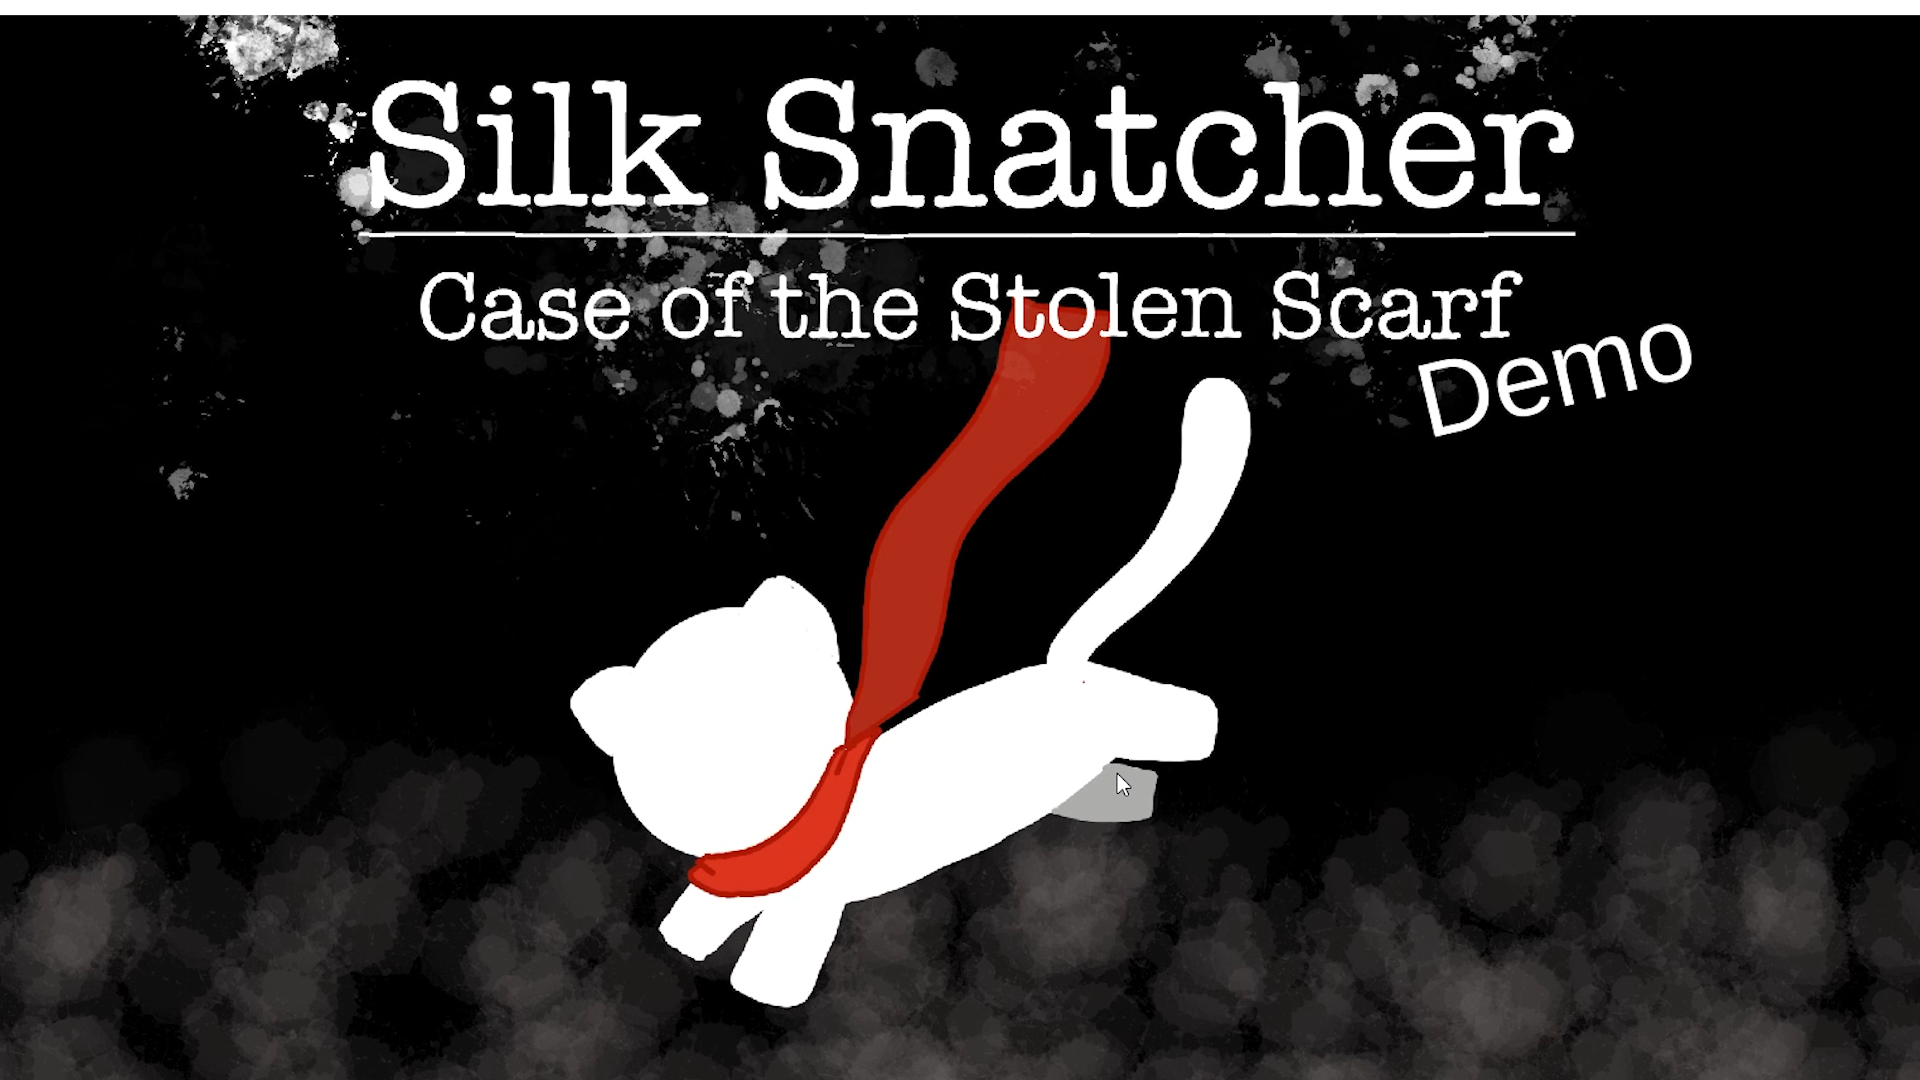 Silk Snatcher [The Demo]